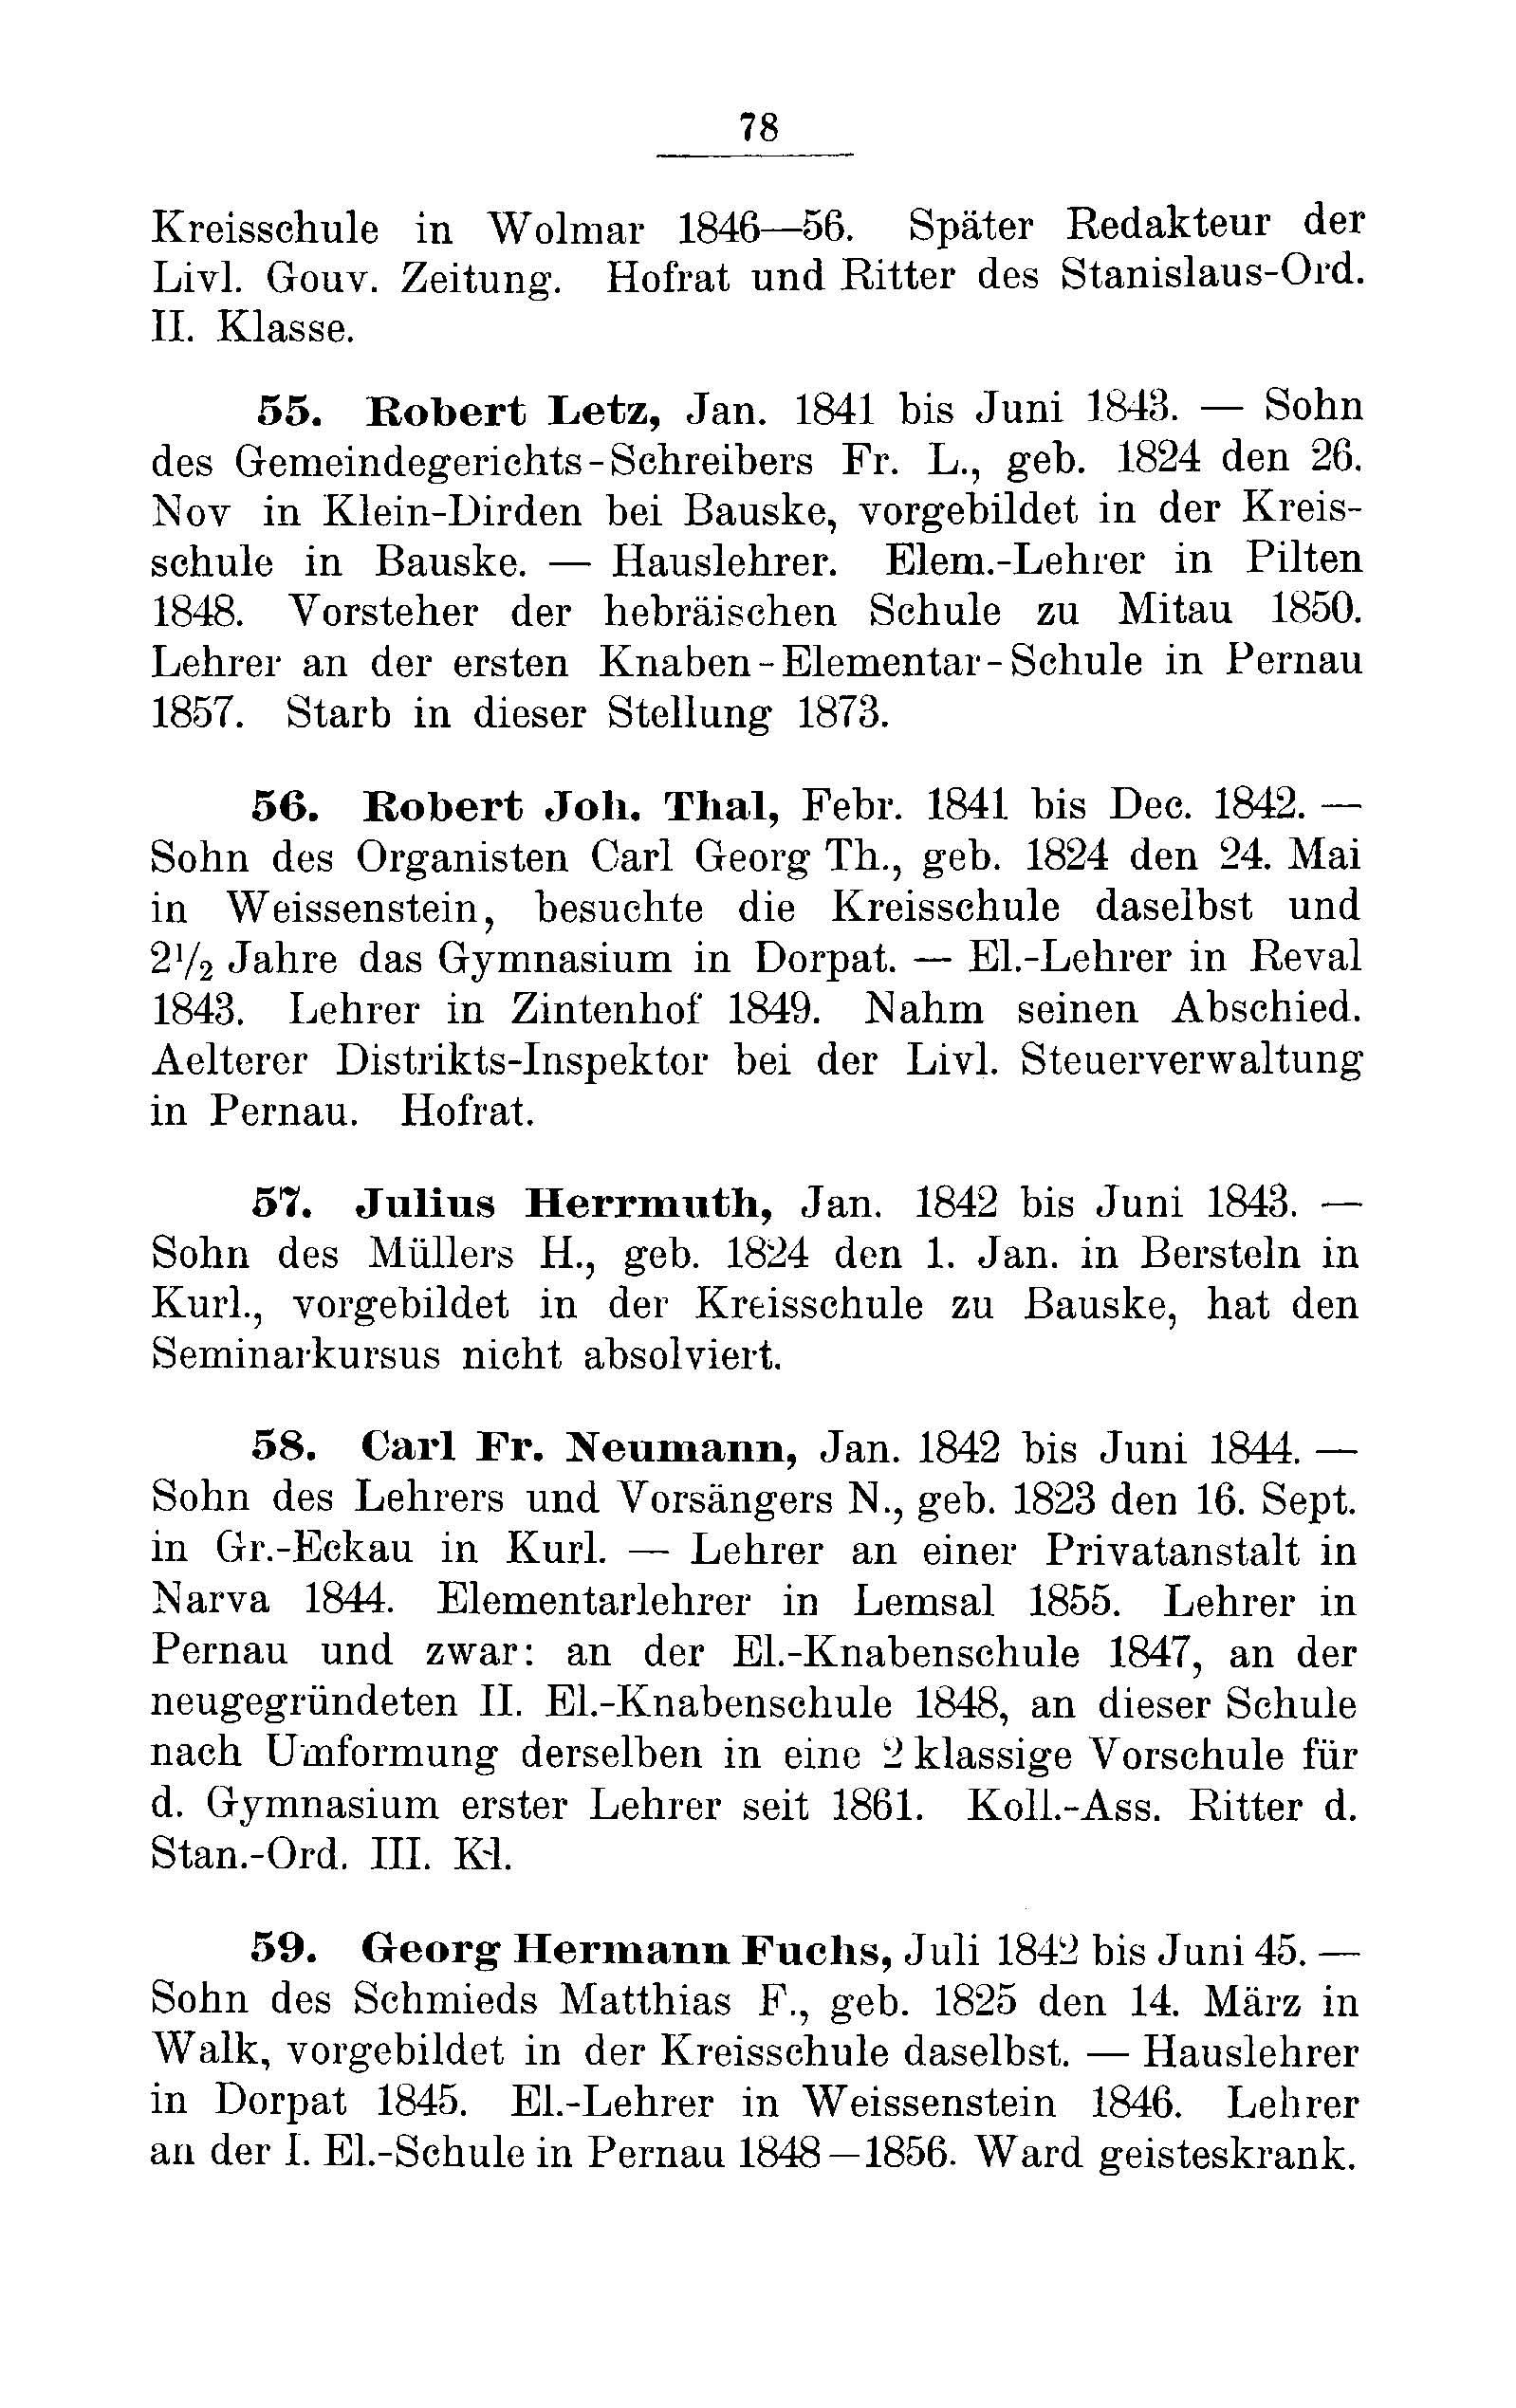 Das Erste Dorpatsche Lehrer-Seminar (1890) | 81. Main body of text